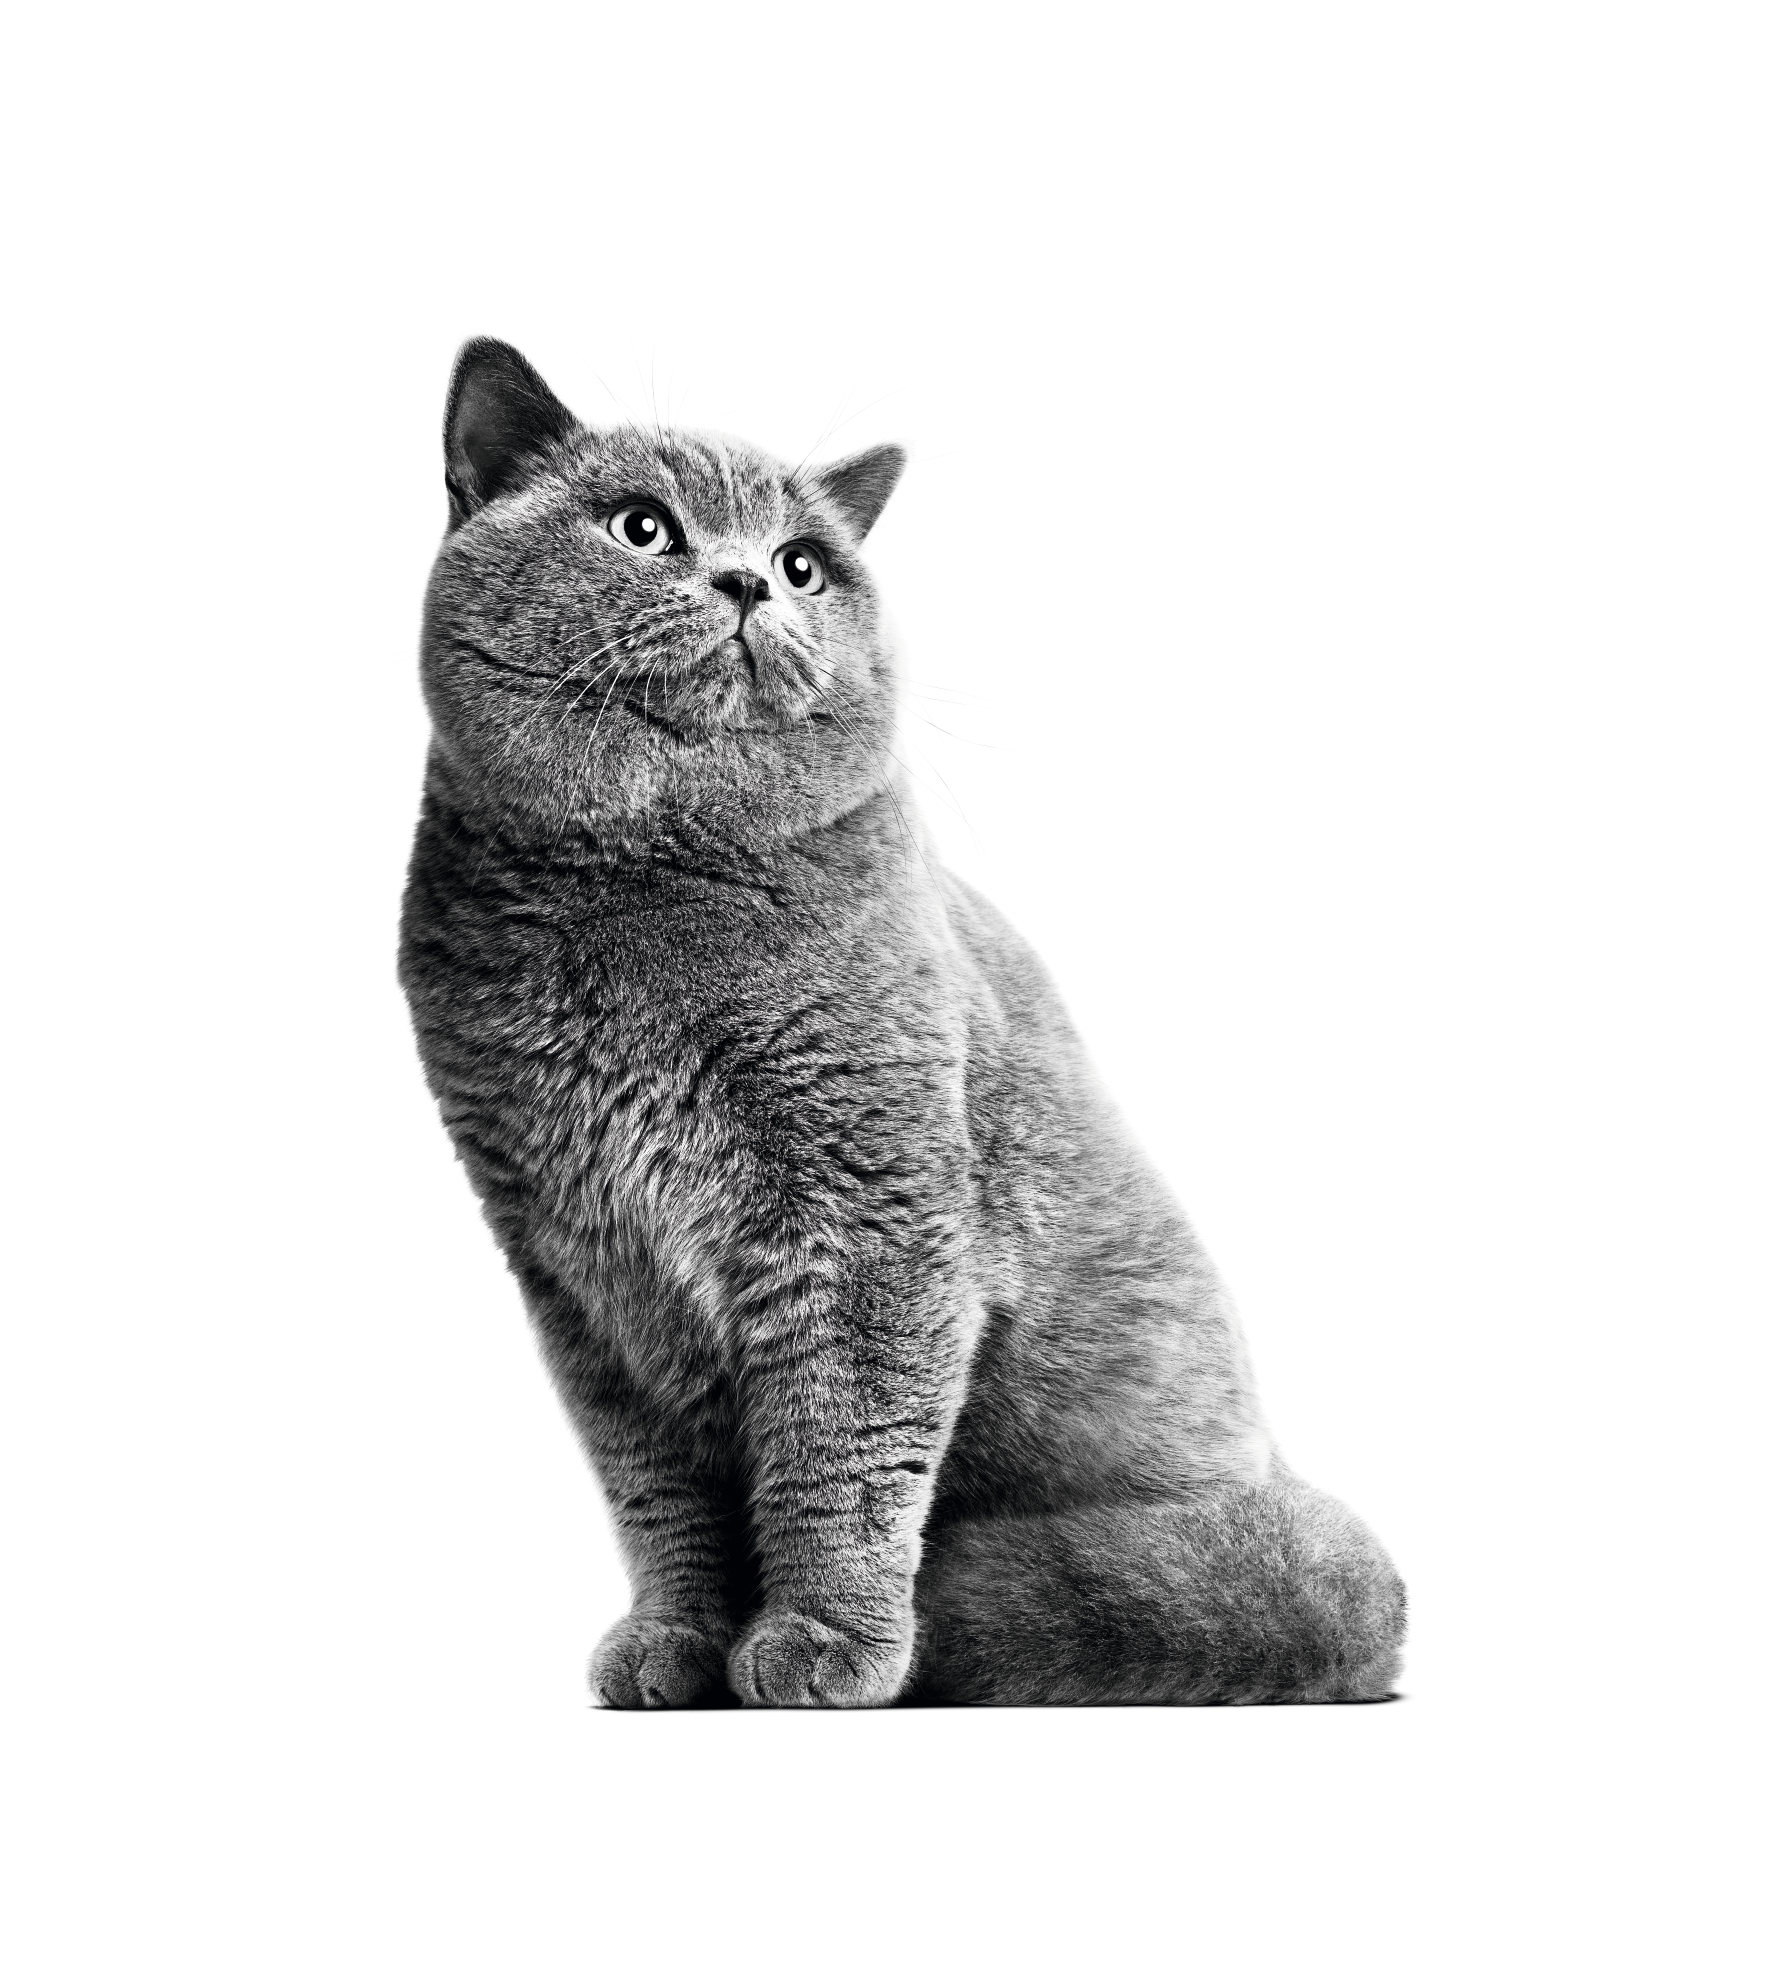 Дорослий кіт британської короткошерстої породи, що сидить, у відтінках сірого на білому тлі